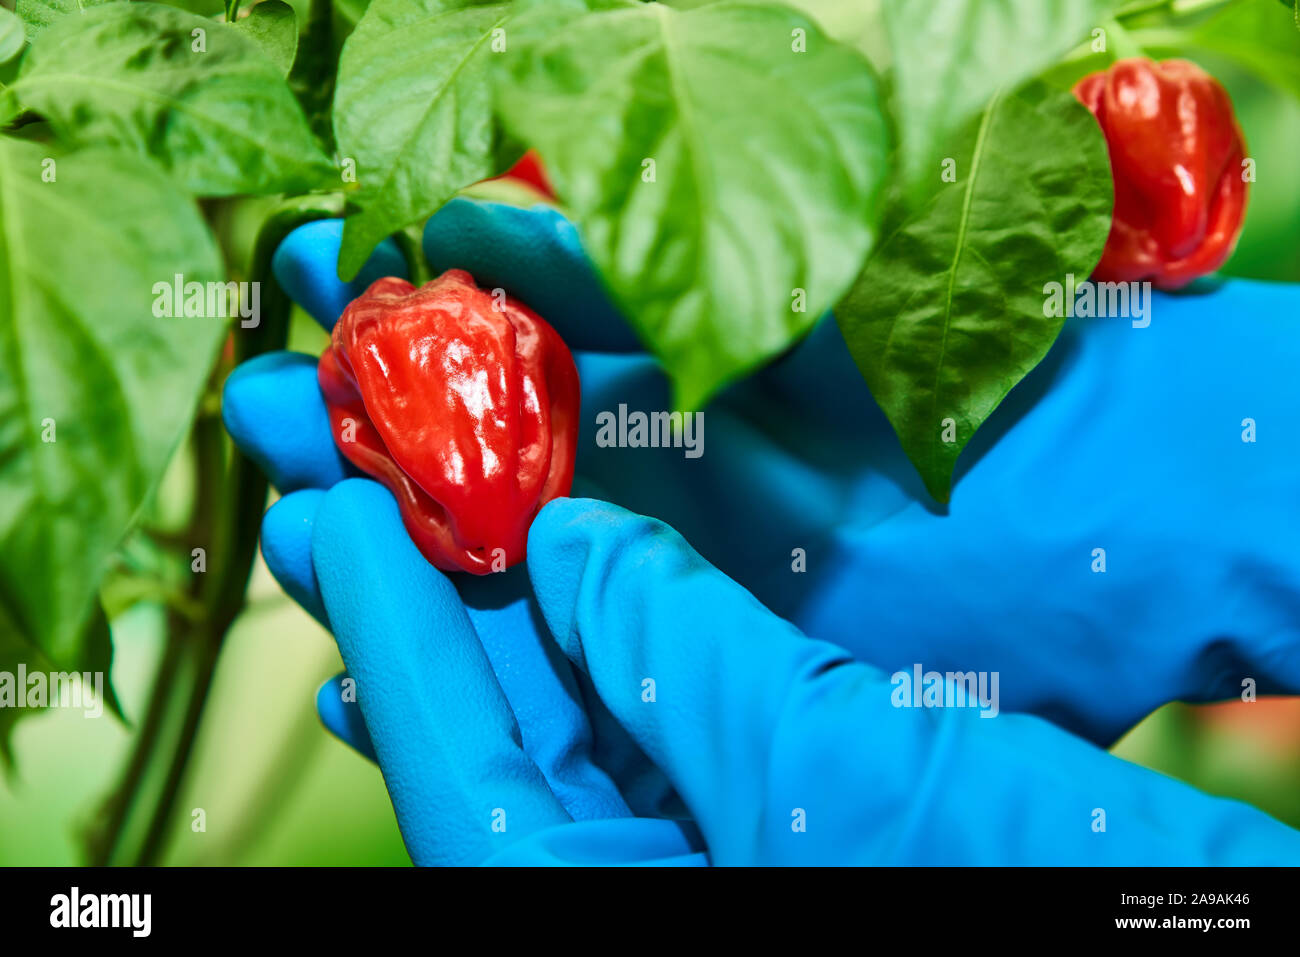 Habanero Pflanze mit frischem, reifem habanero Paprika, reif für die Ernte  Stockfotografie - Alamy